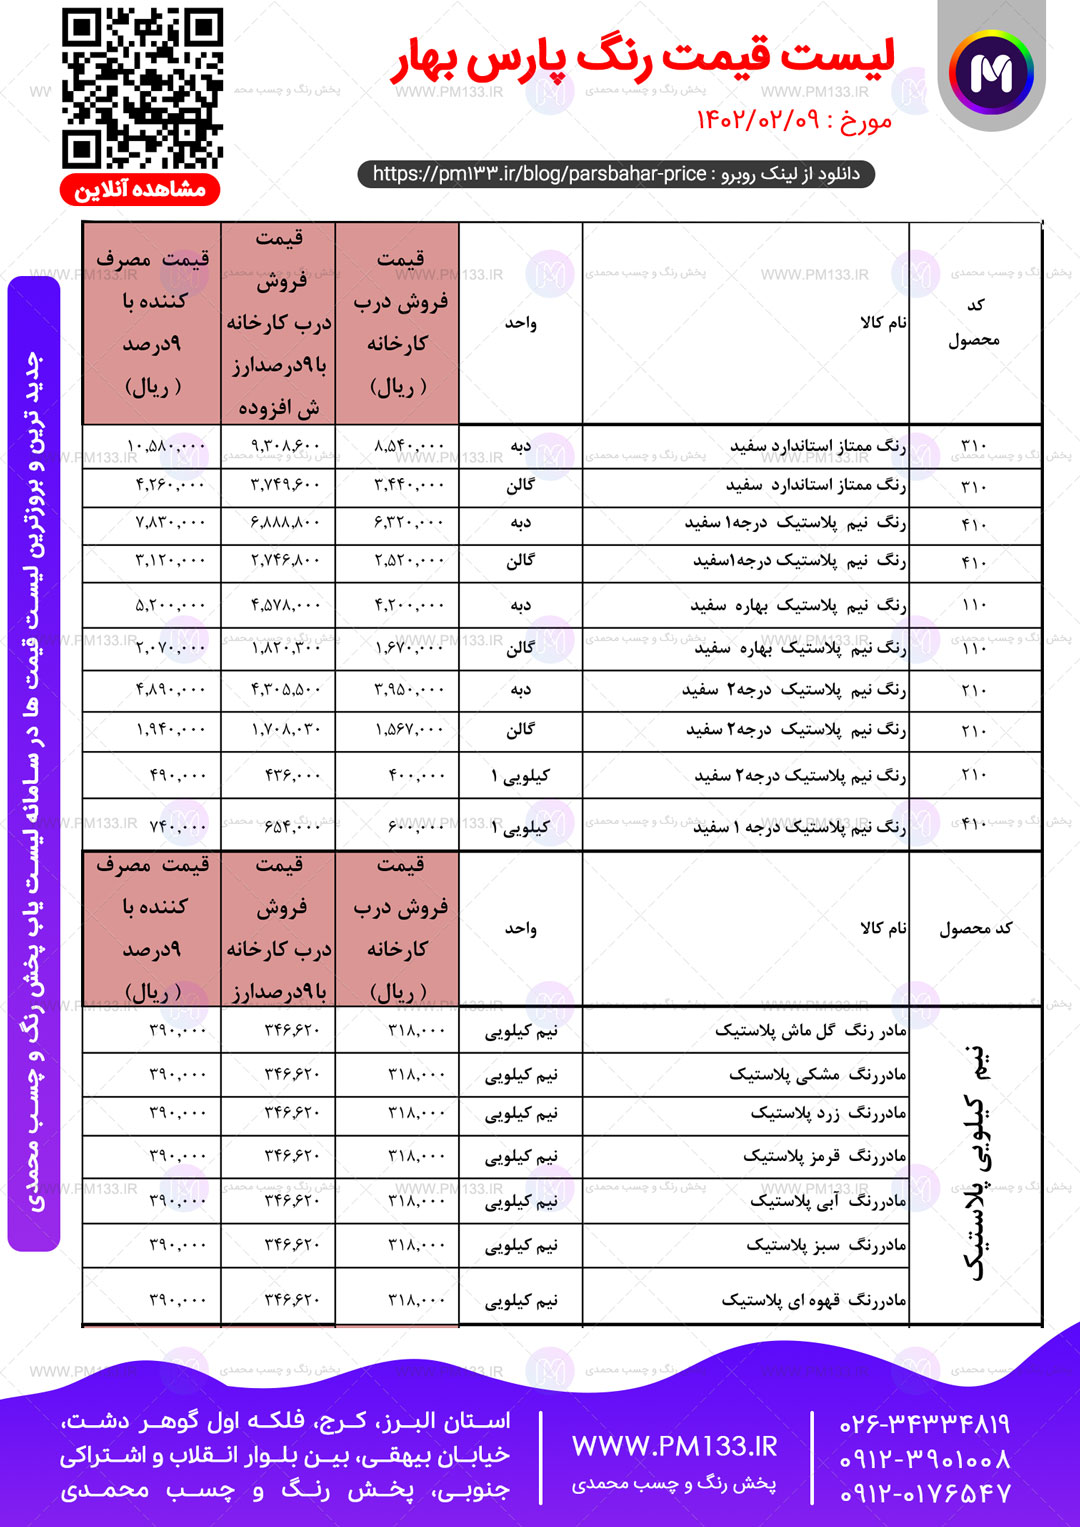 لیست قیمت پارس بهار مورخ 09-02-1402 صفحه1